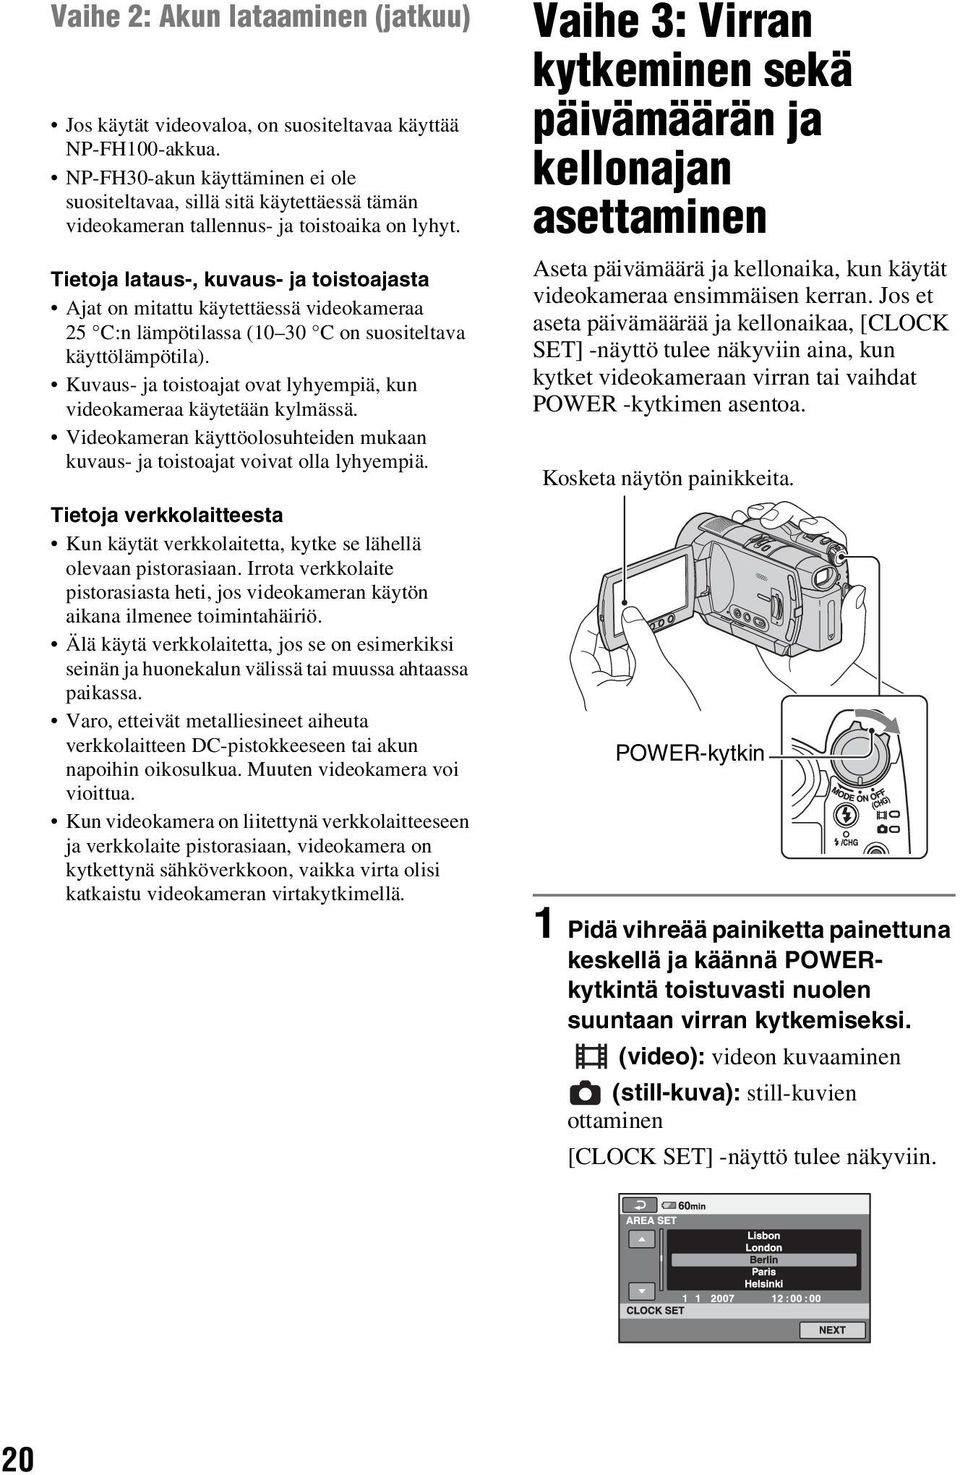 Tietoja lataus-, kuvaus- ja toistoajasta Ajat on mitattu käytettäessä videokameraa 25 C:n lämpötilassa (10 30 C on suositeltava käyttölämpötila).